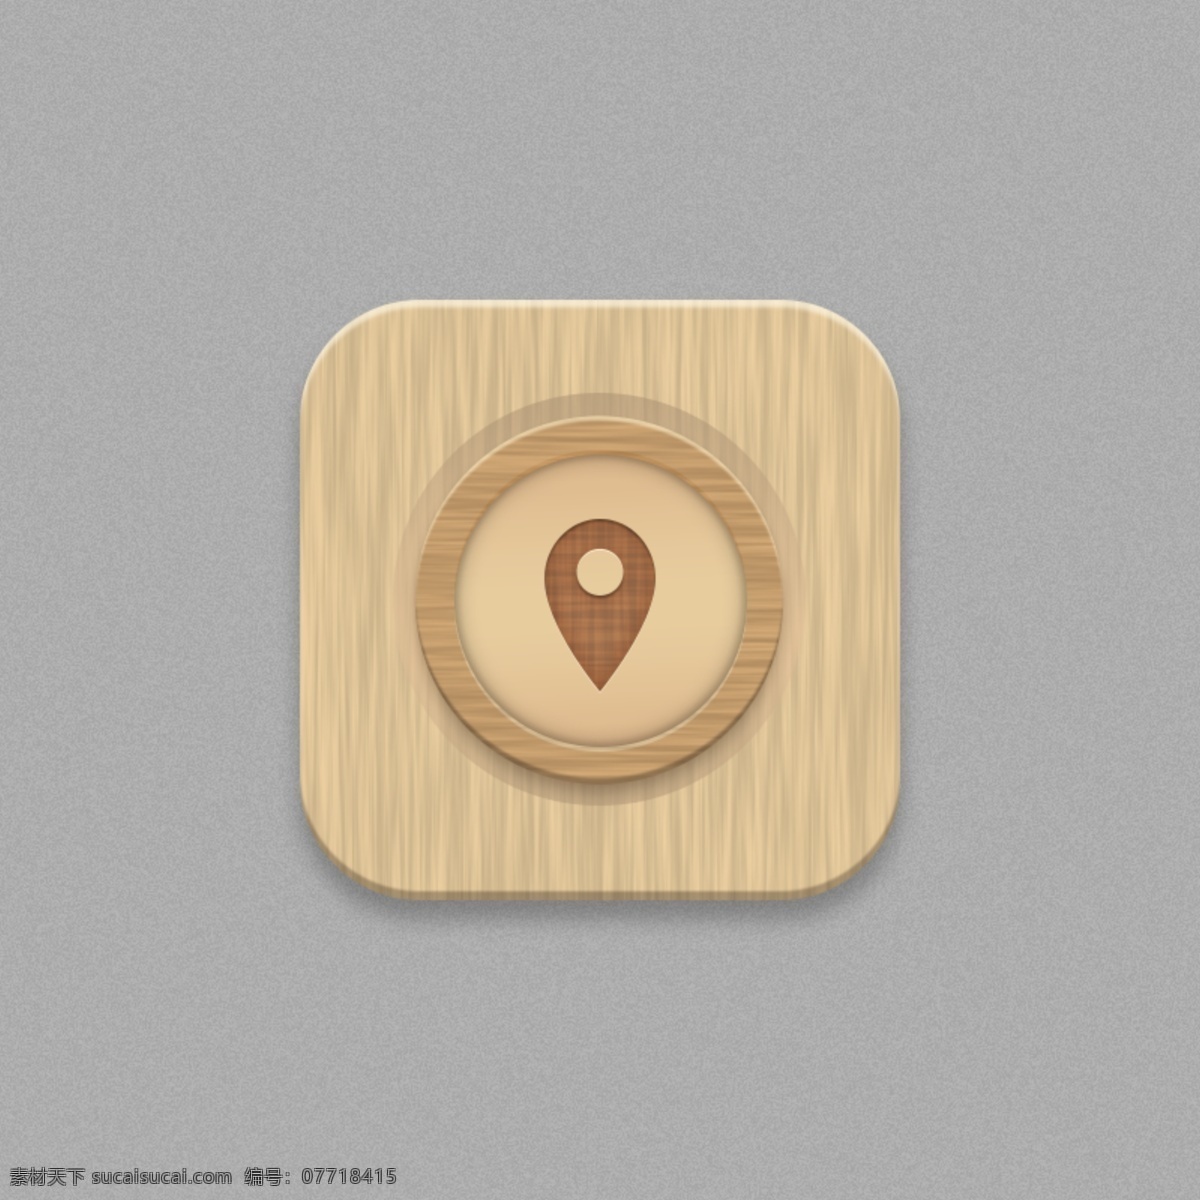 地图 定位 图标 手机 主题 木纹 app app图标 手机主题 icon